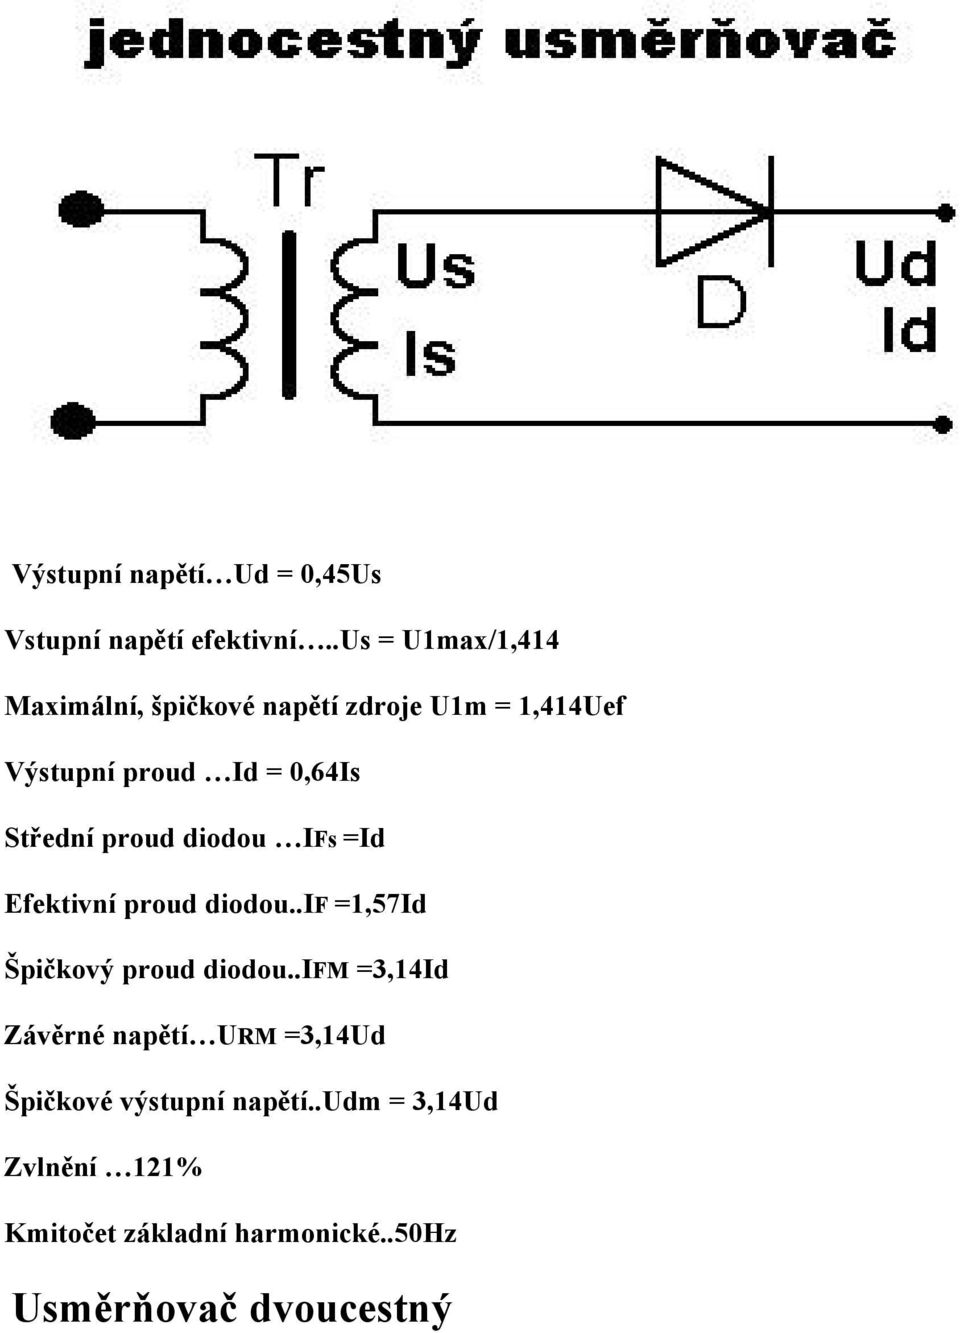 Středná proud diodou IFs =Id Efektivná proud diodou..if =1,57Id Špičkovâ proud diodou.